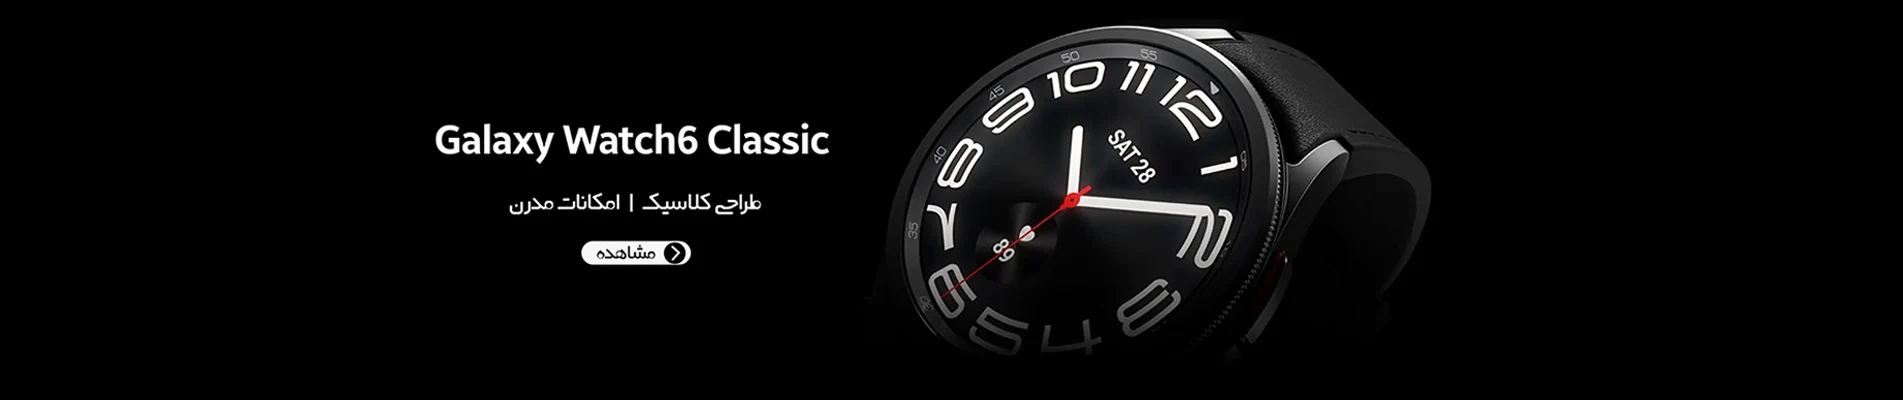 خرید ساعت هوشمند سامسونگ مدل Galaxy Watch 6 Classic